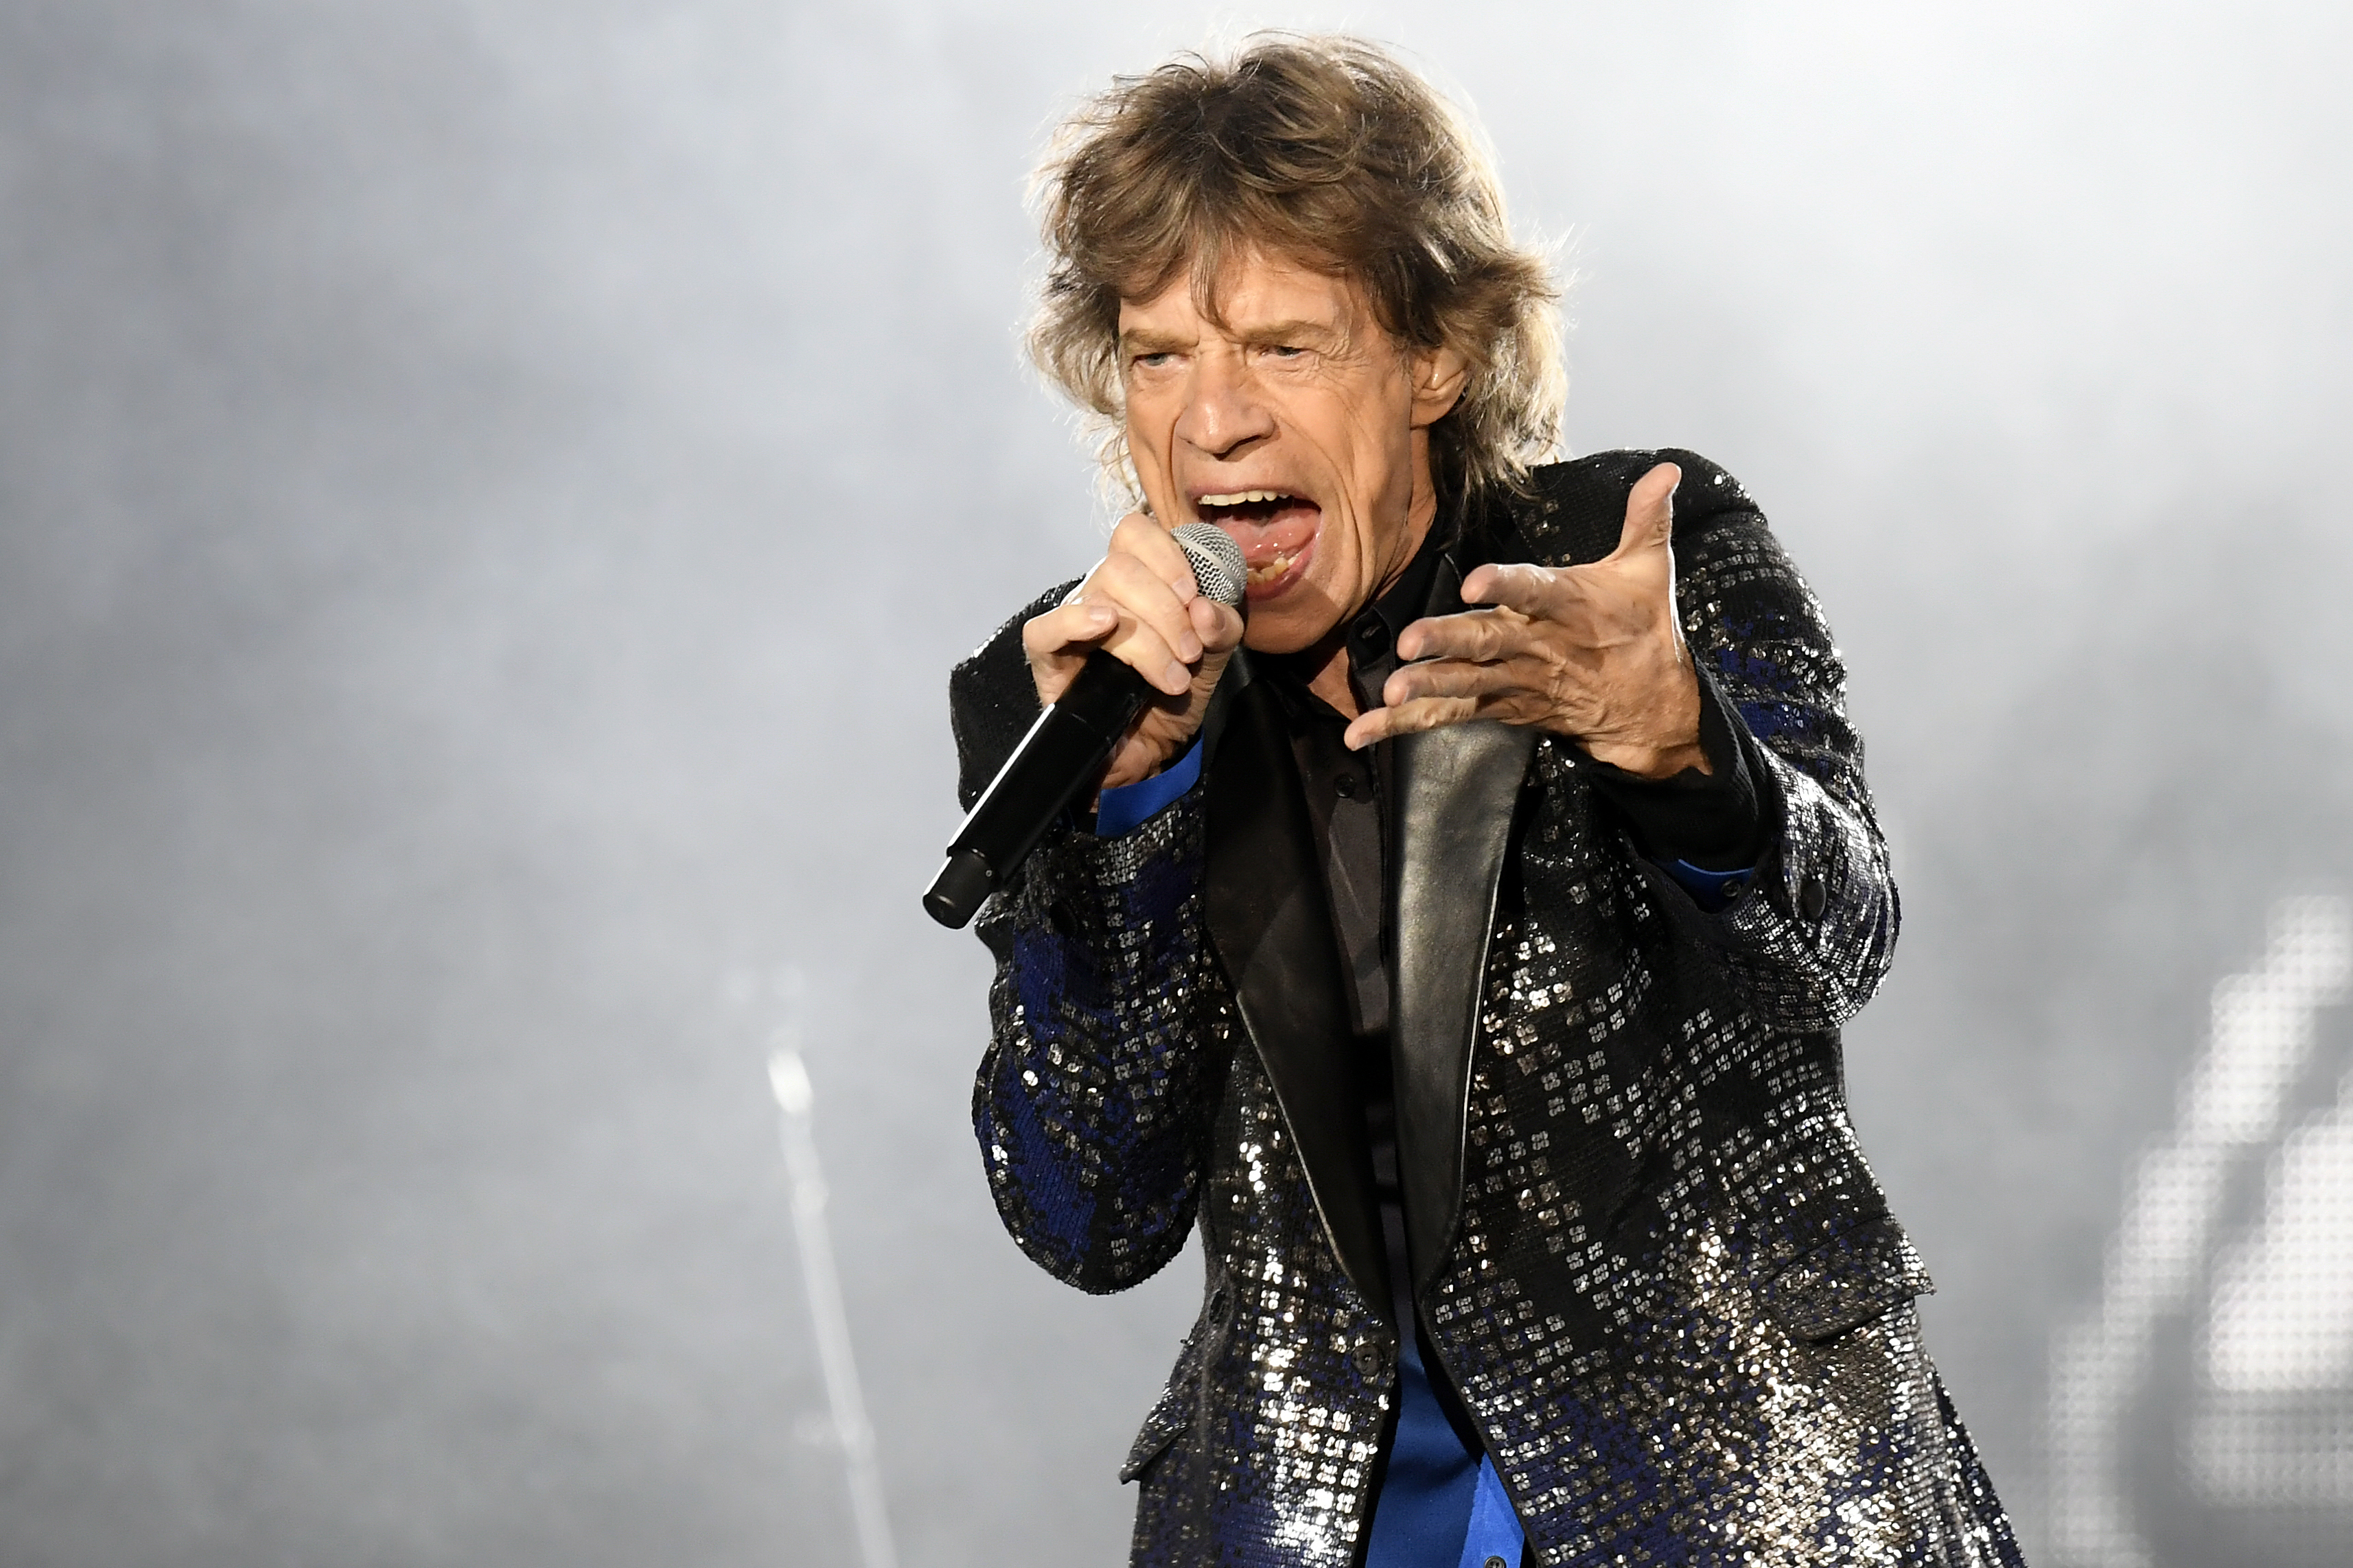 Mick Jagger durate un concerto del tour europeo No Filter
(Walter Bieri/Keystone via AP)